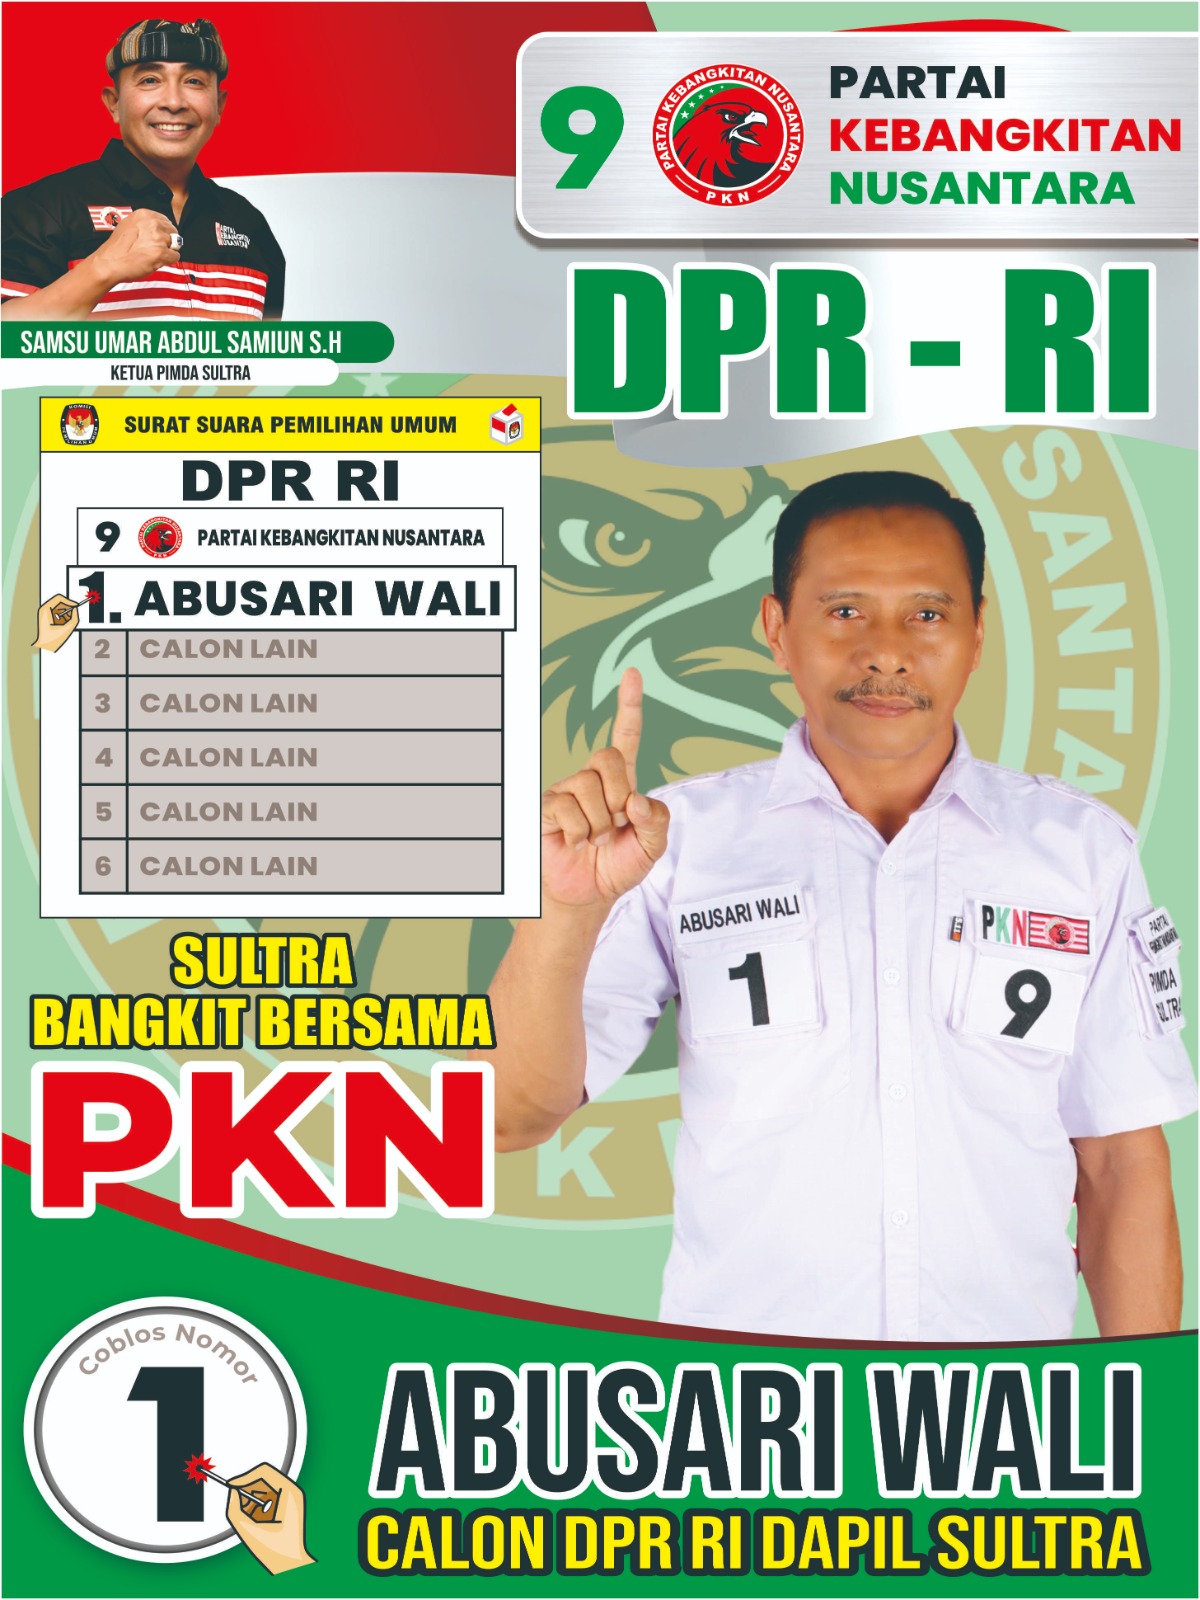 Bapak Abusari Wali Pengusaha Indonesia dan Samsu Umar Abdul Samiun Tokoh Politik Indonesia